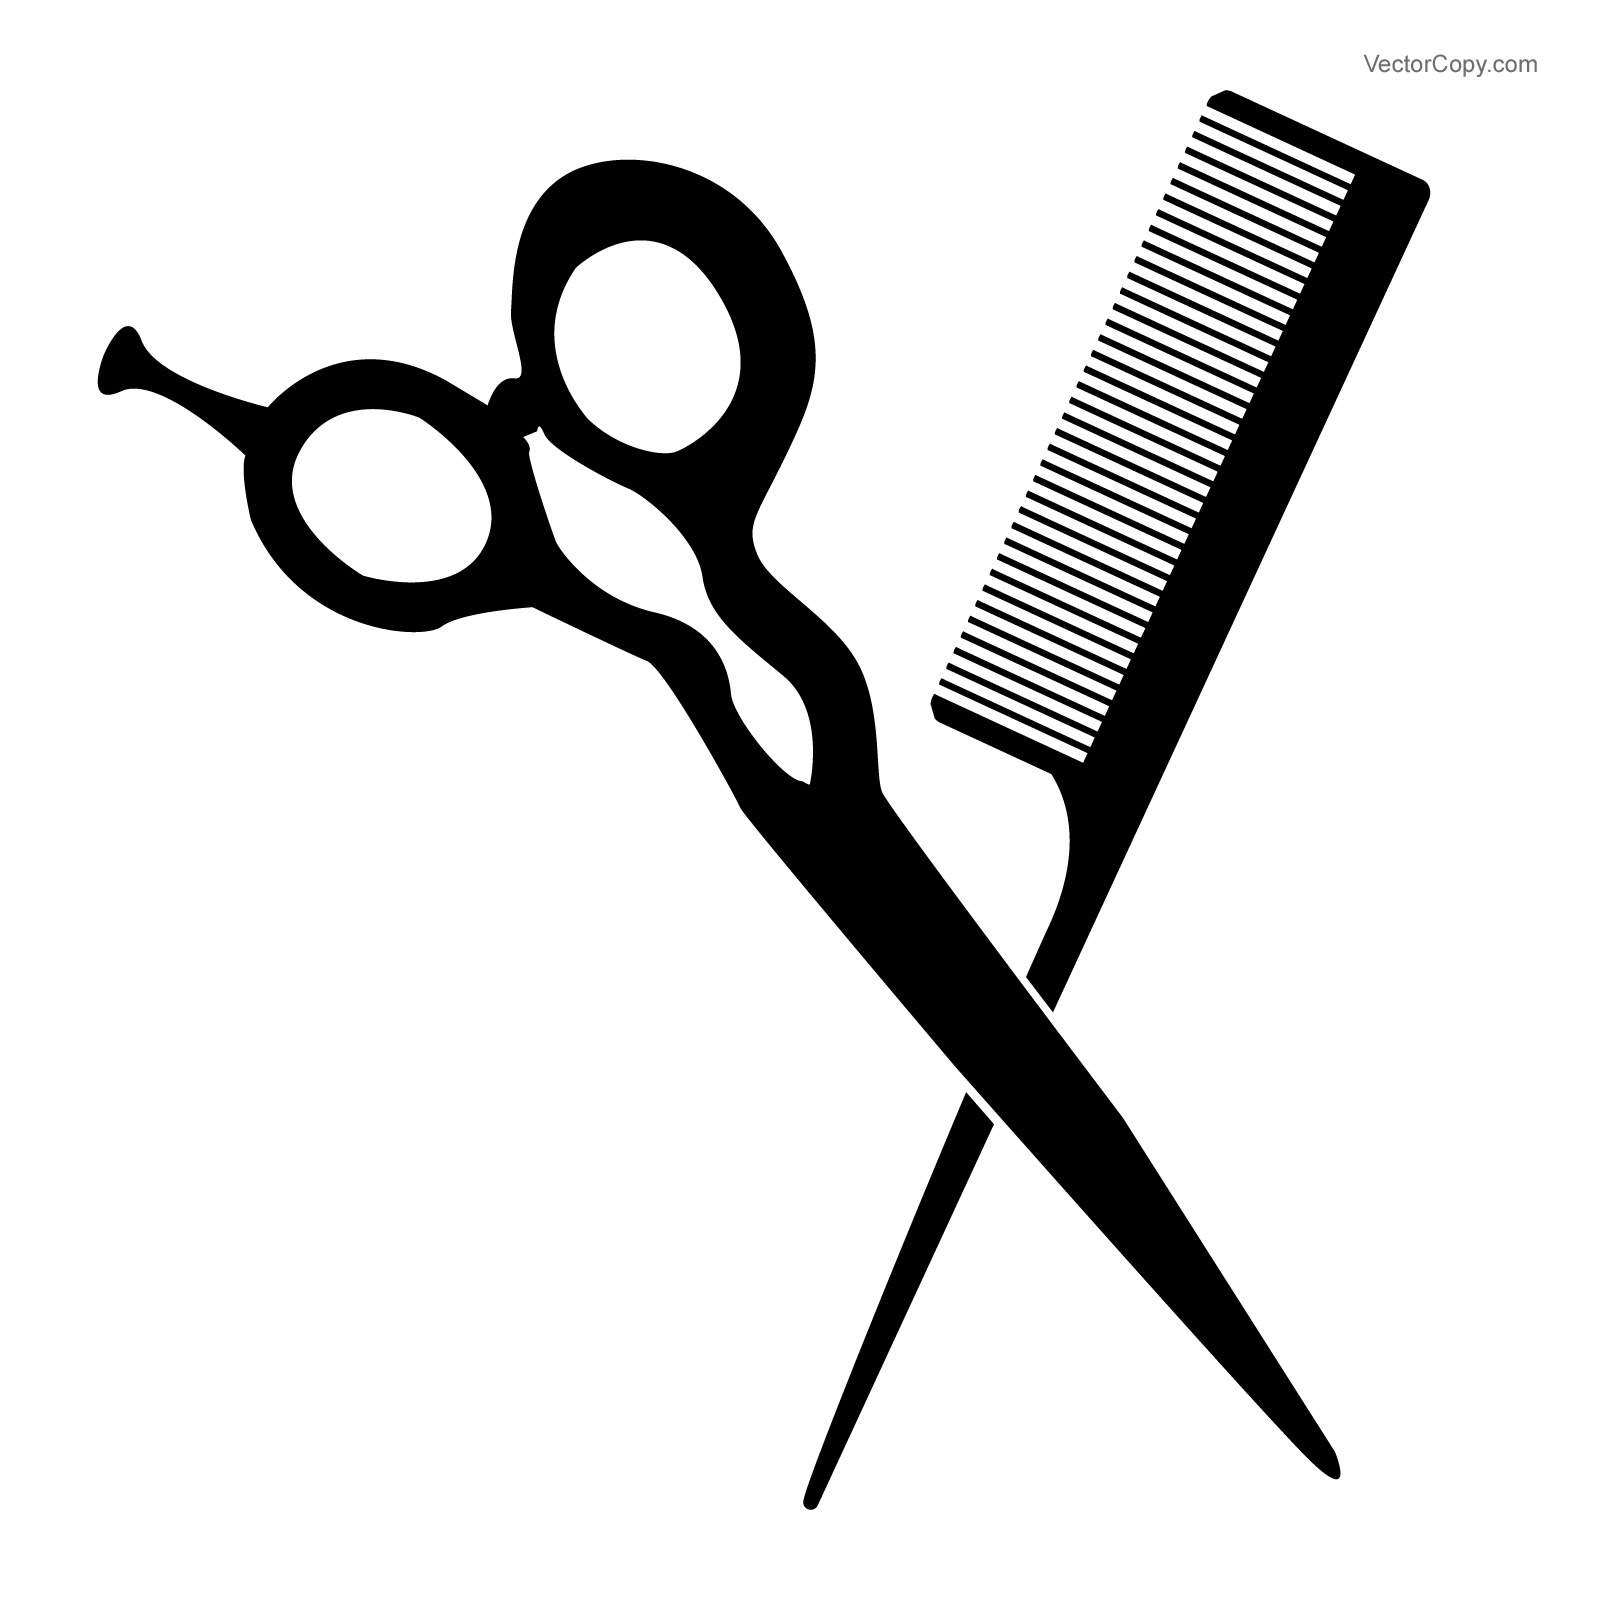 Barber Scissors and Comb Clip Art